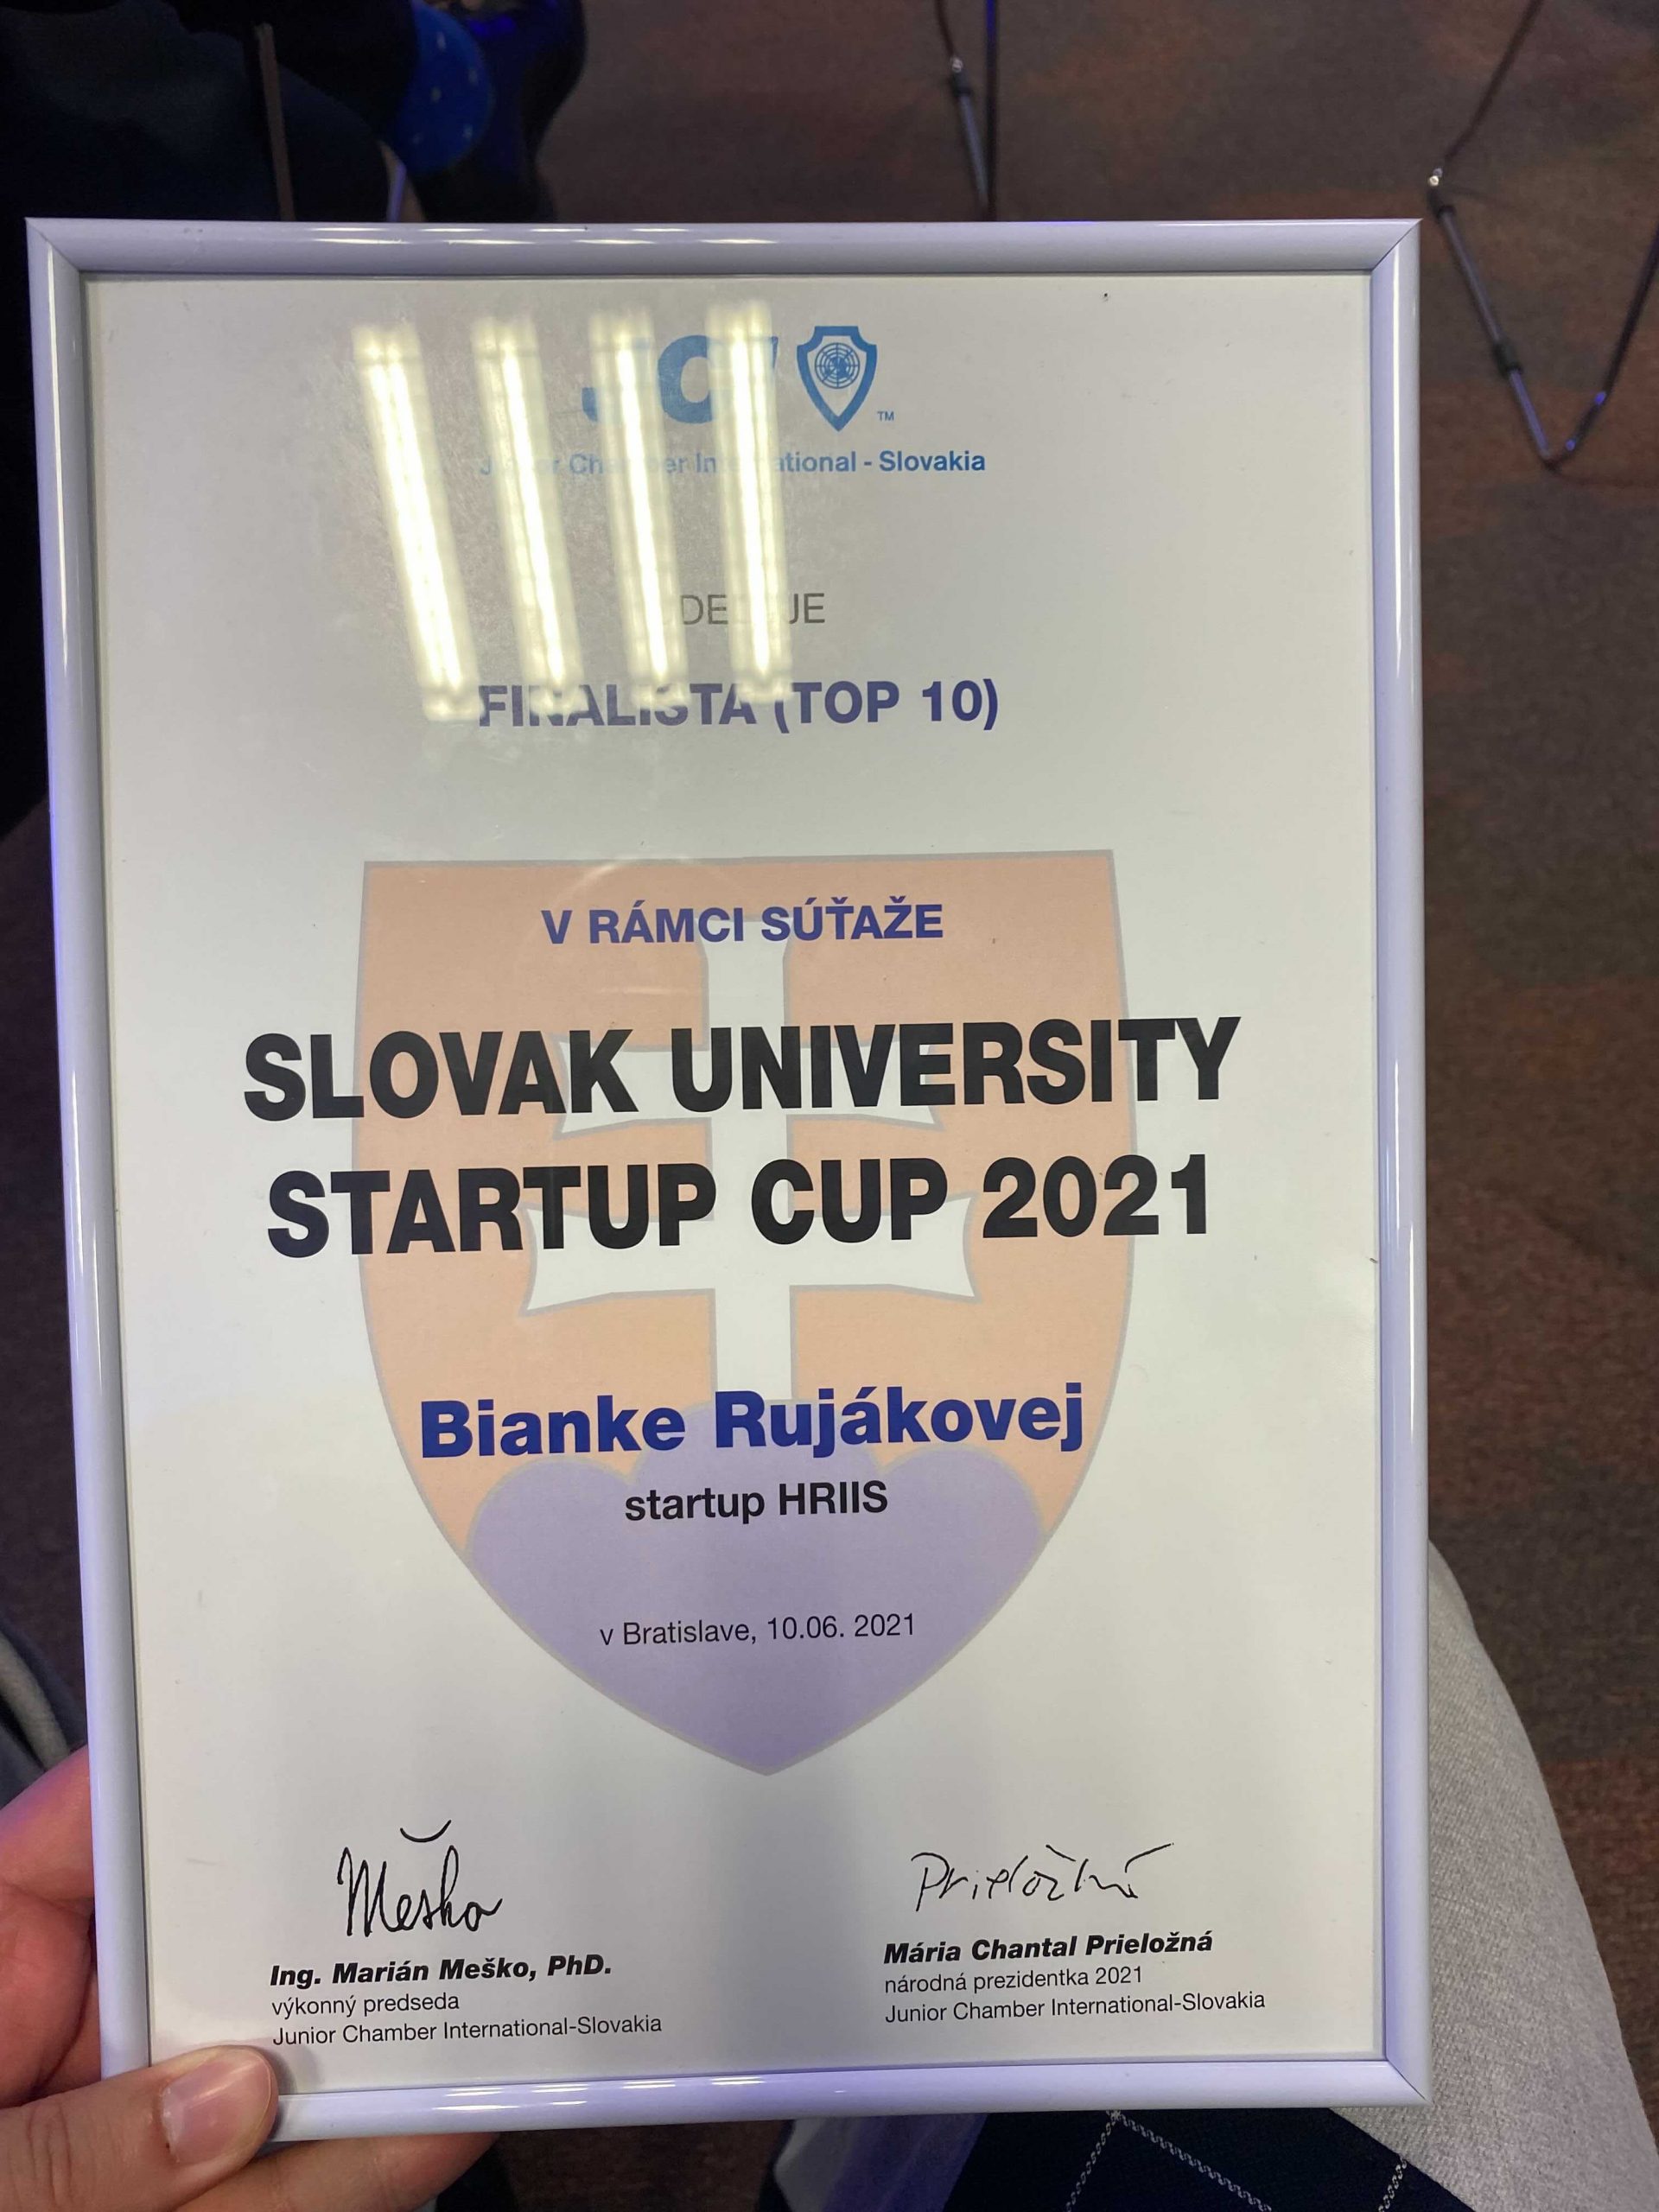 Slovak University Startup Cup 2021